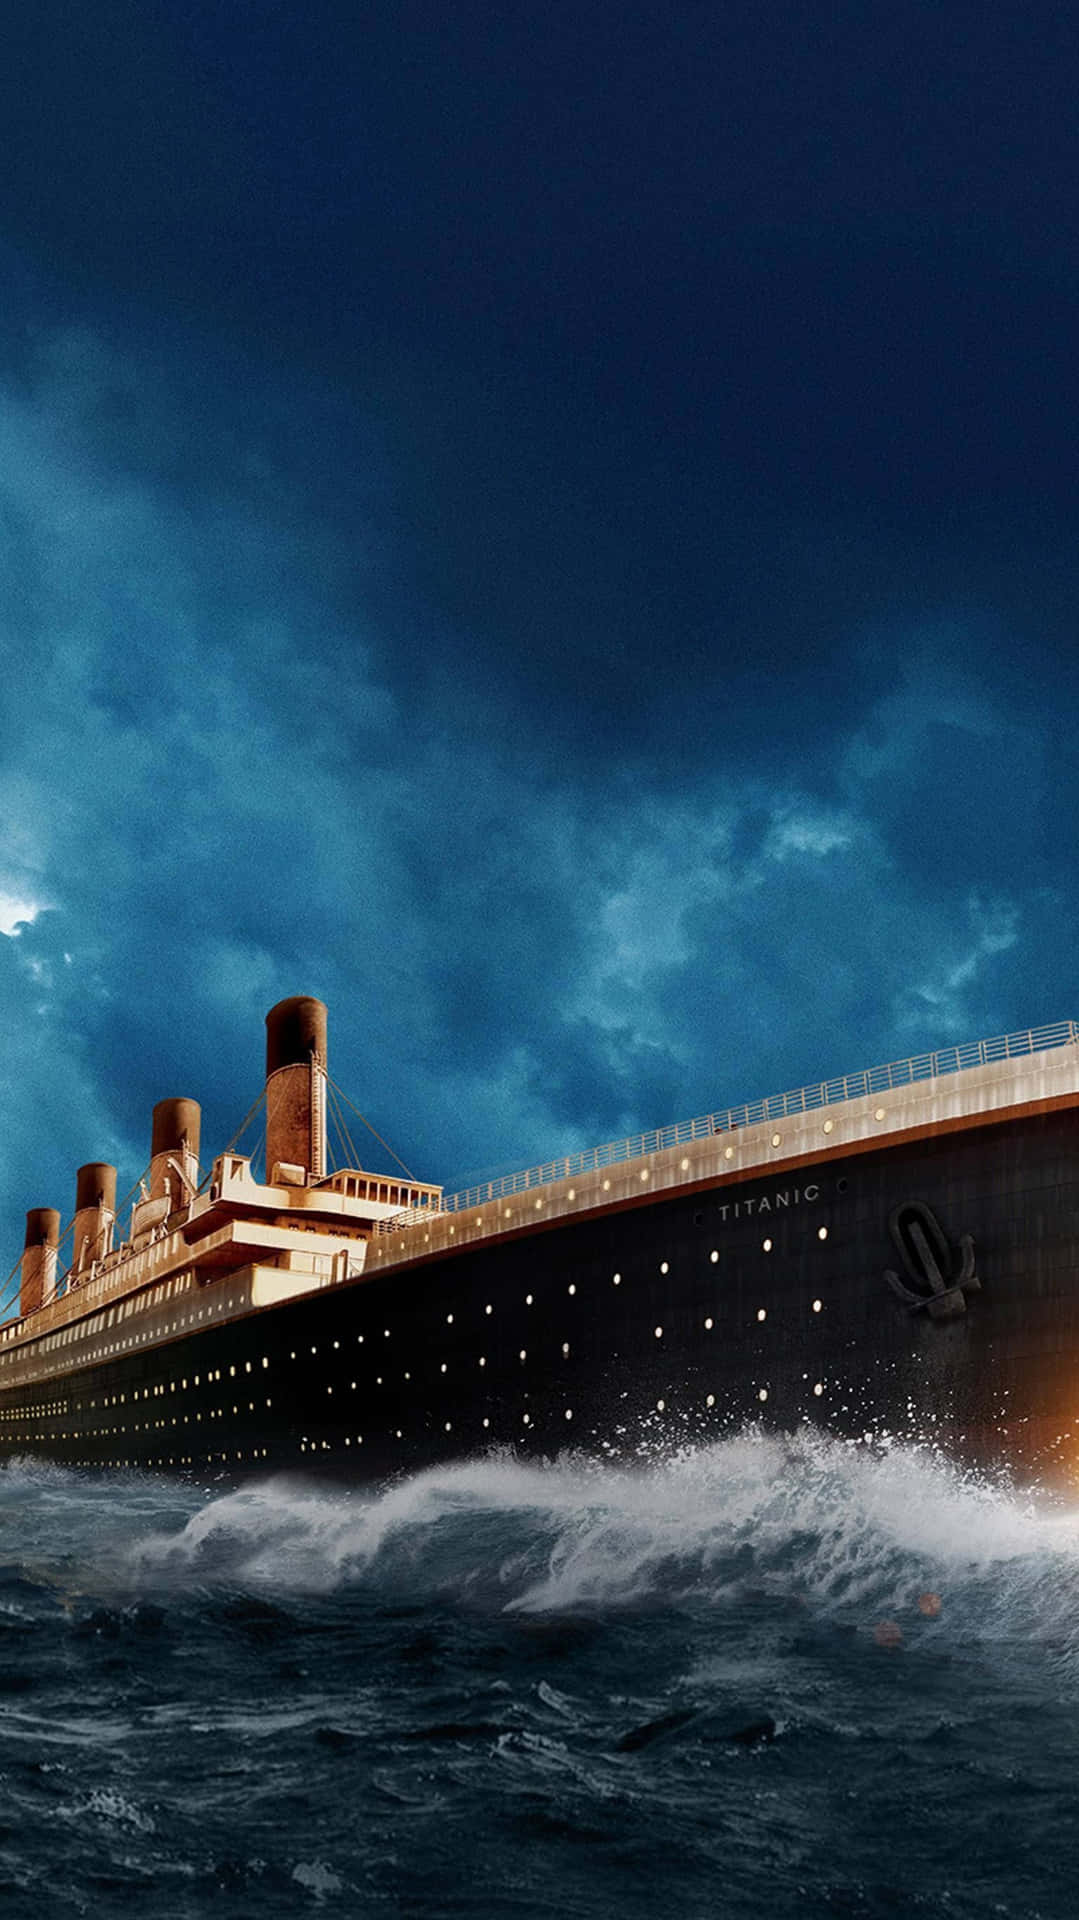 Lamajestuosidad Del Titanic